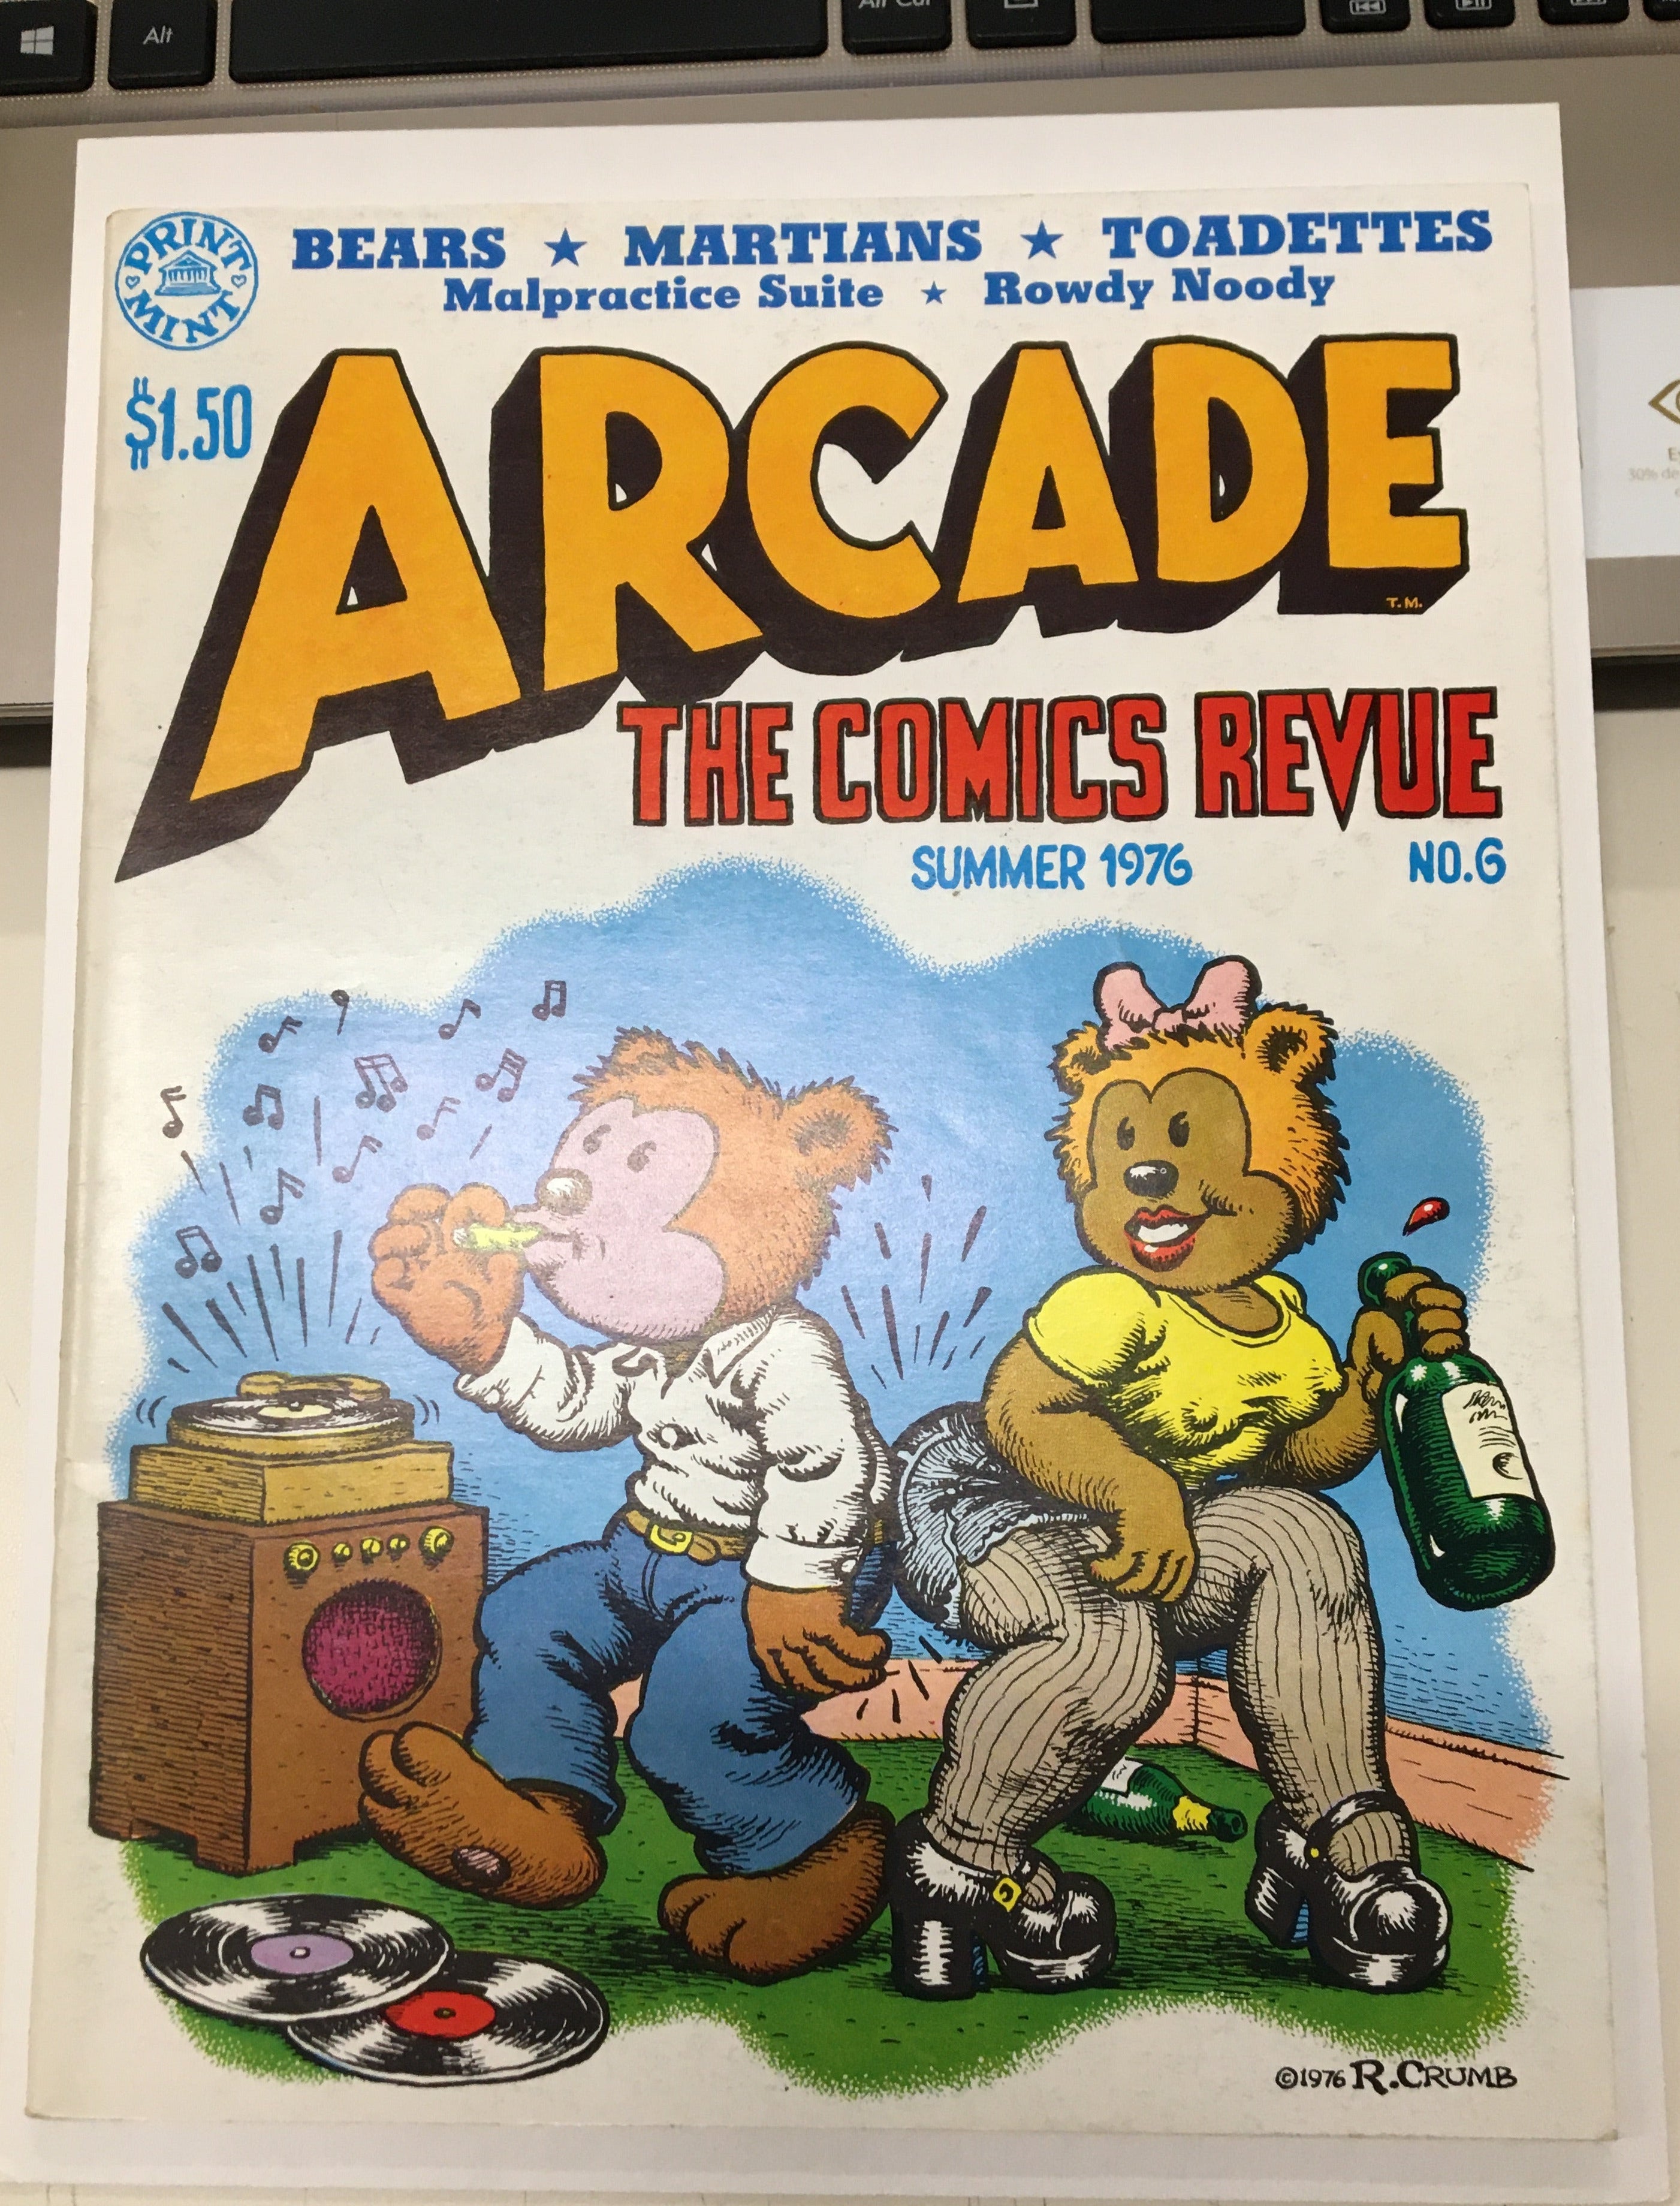 Arcade the Comics Revue #6 | L.A. Mood Comics and Games